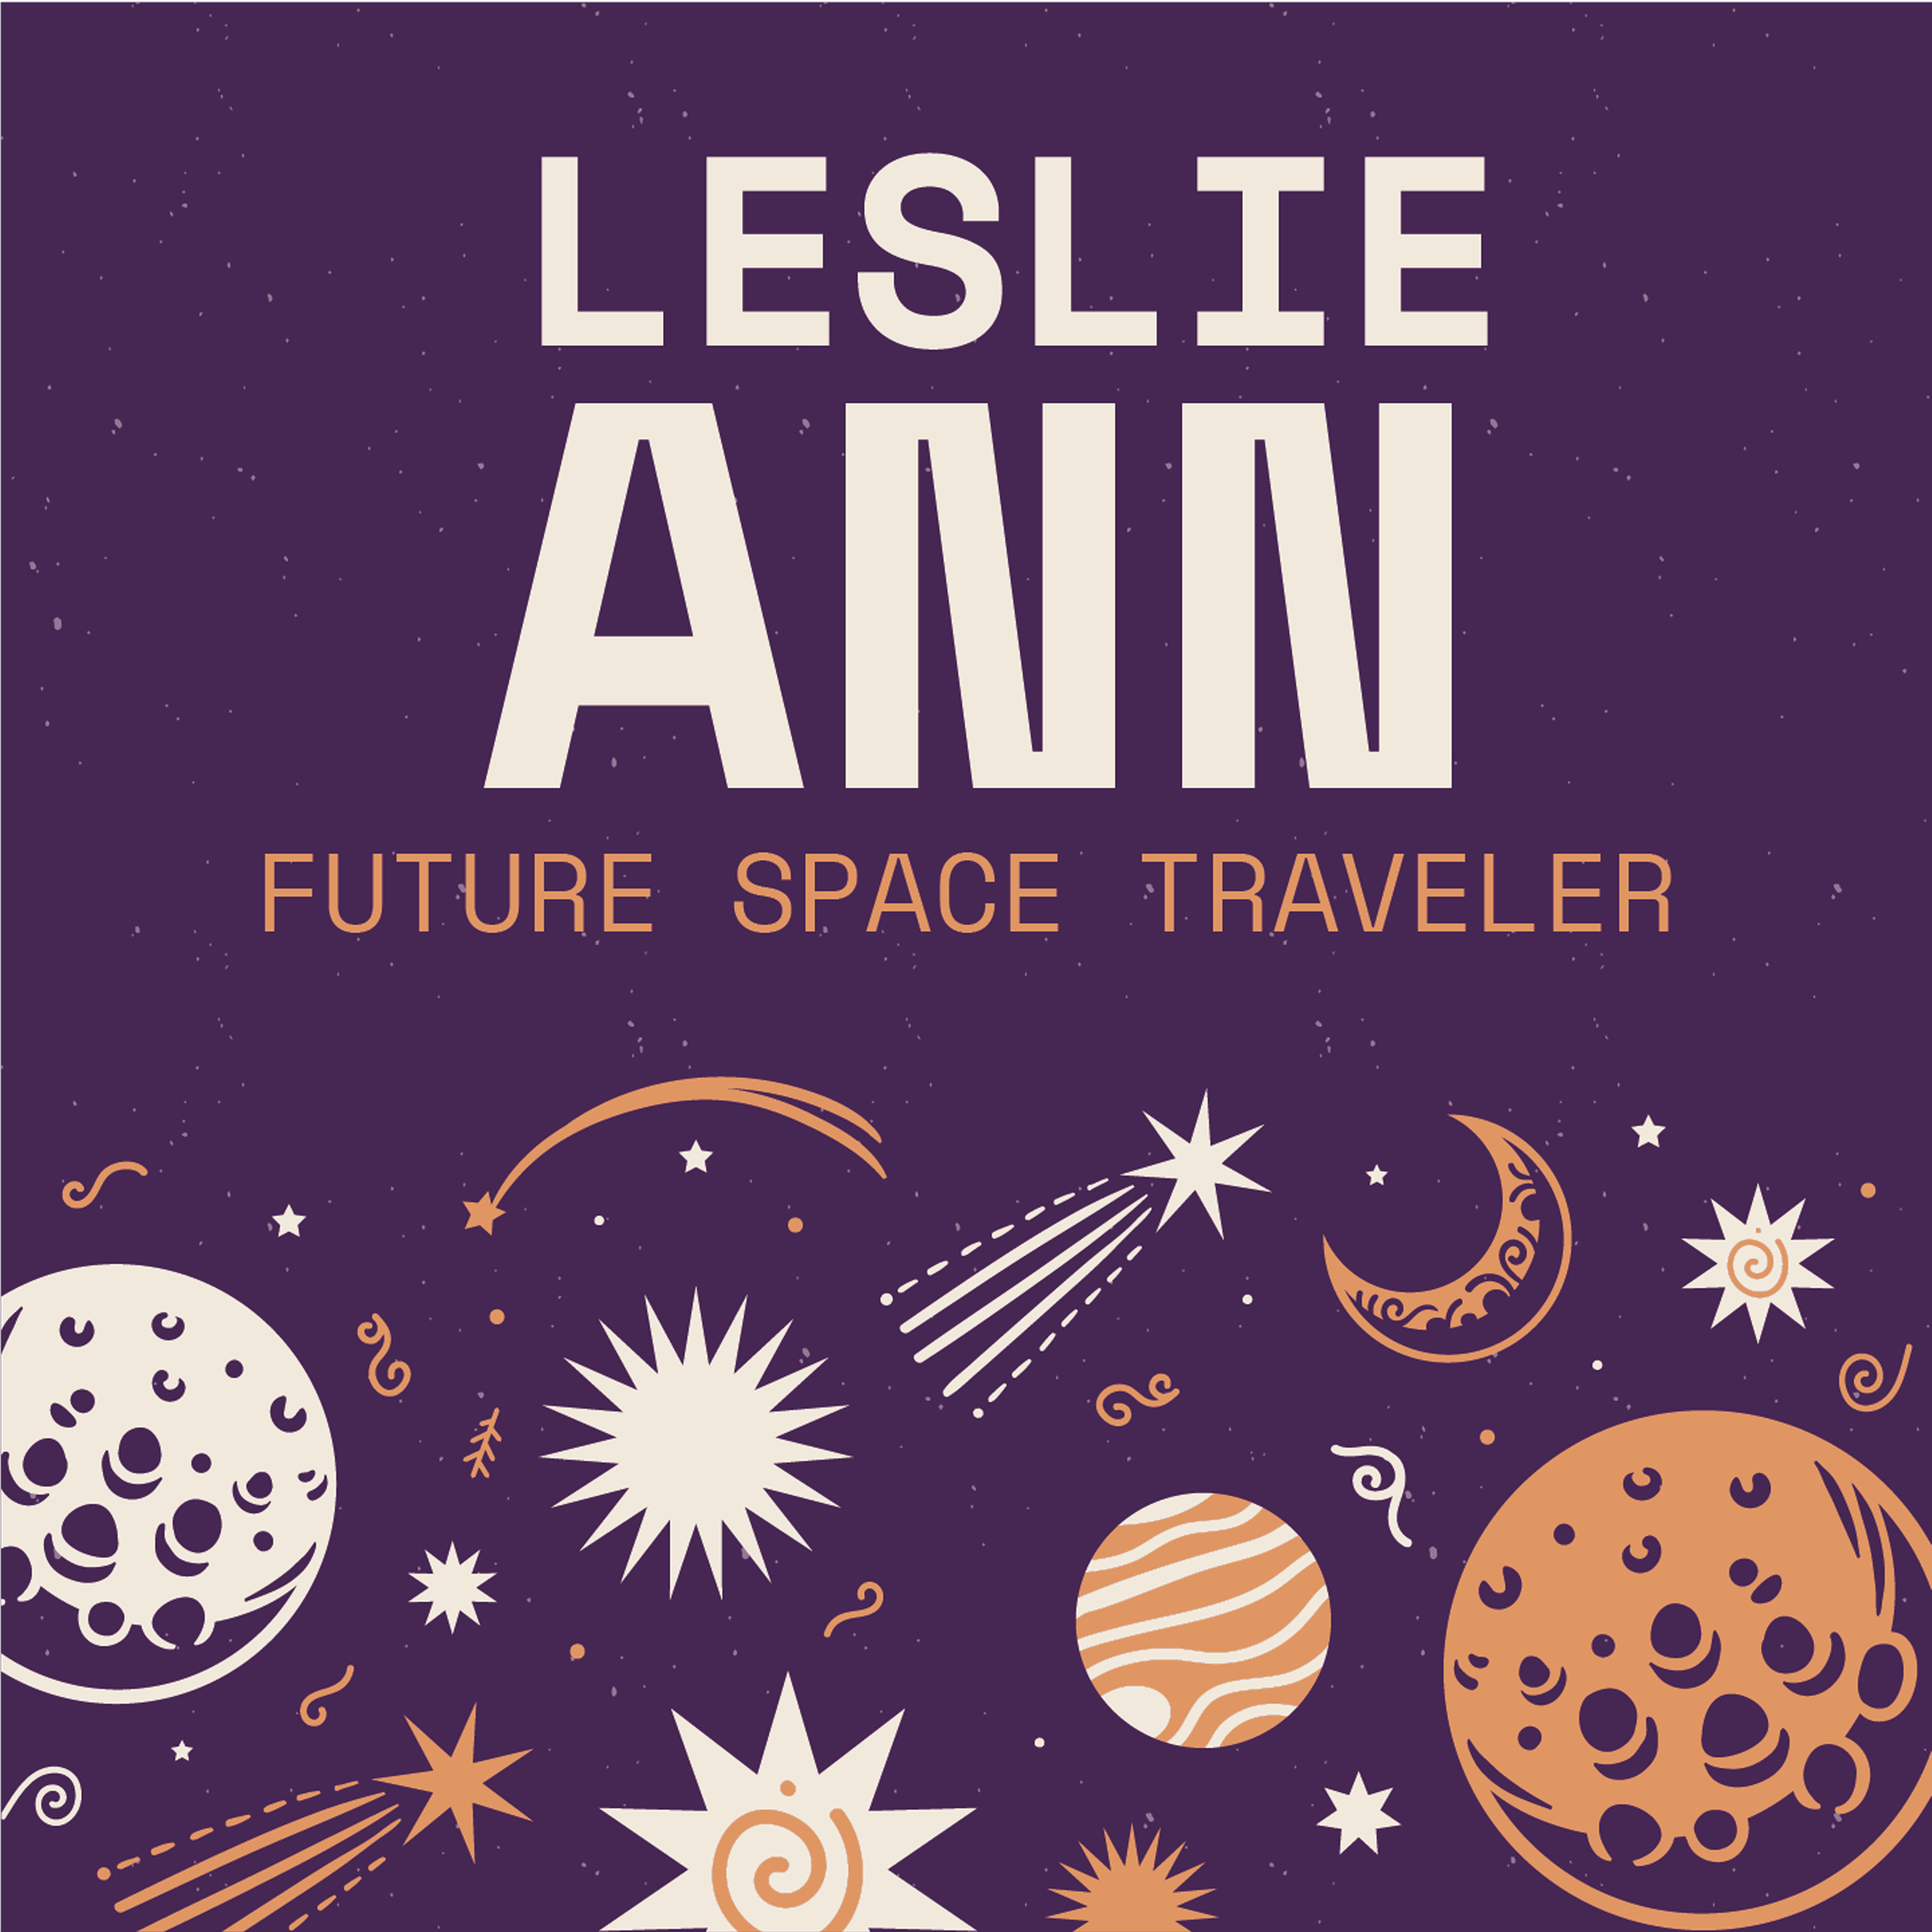 Future Space Traveler